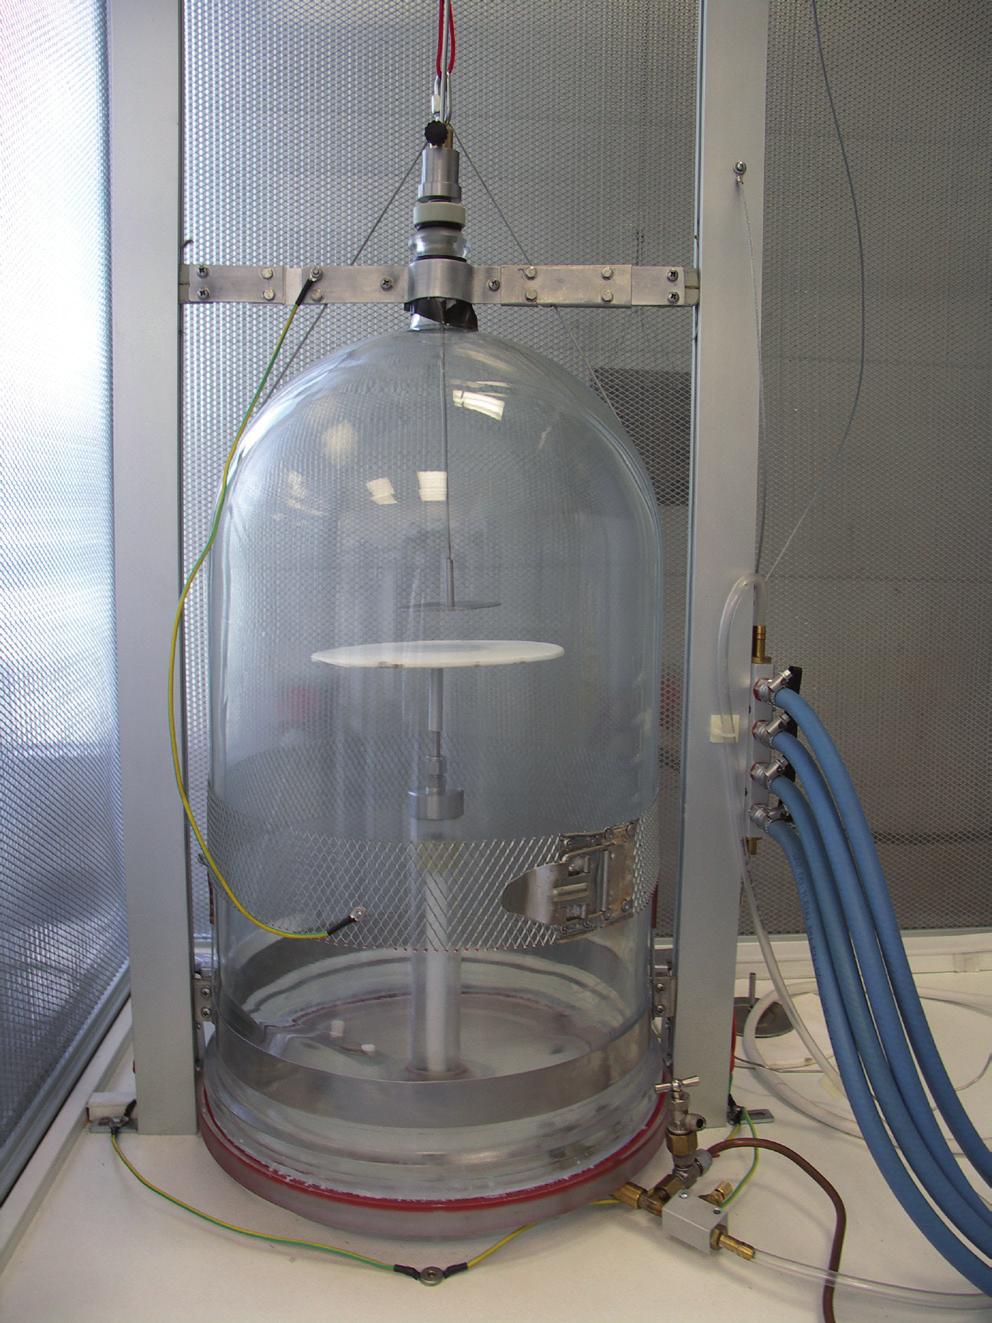 Analizę lotnych związków zapachowych przeprowadzono metodą chromatografii gazowej przy użyciu aparatu firmy Agilent Technologies 6890 Network GC System, zaopatrzonego w detektor masowy (GC/MS).